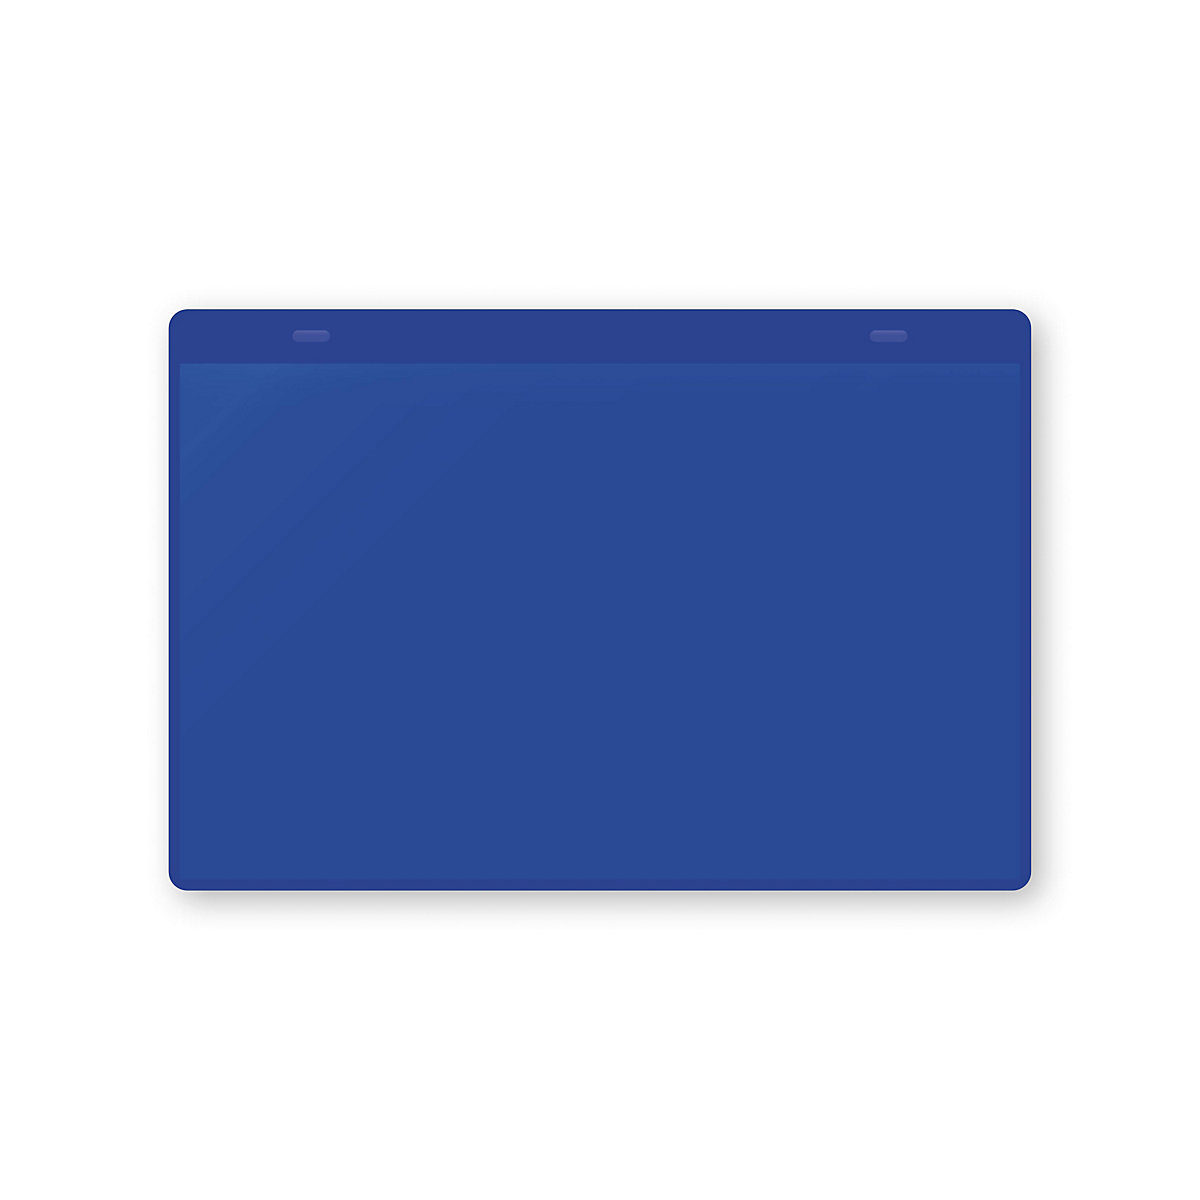 Pochettes porte-documents avec languettes d'accrochage, format A5 à l'horizontale, lot de 10, bleu